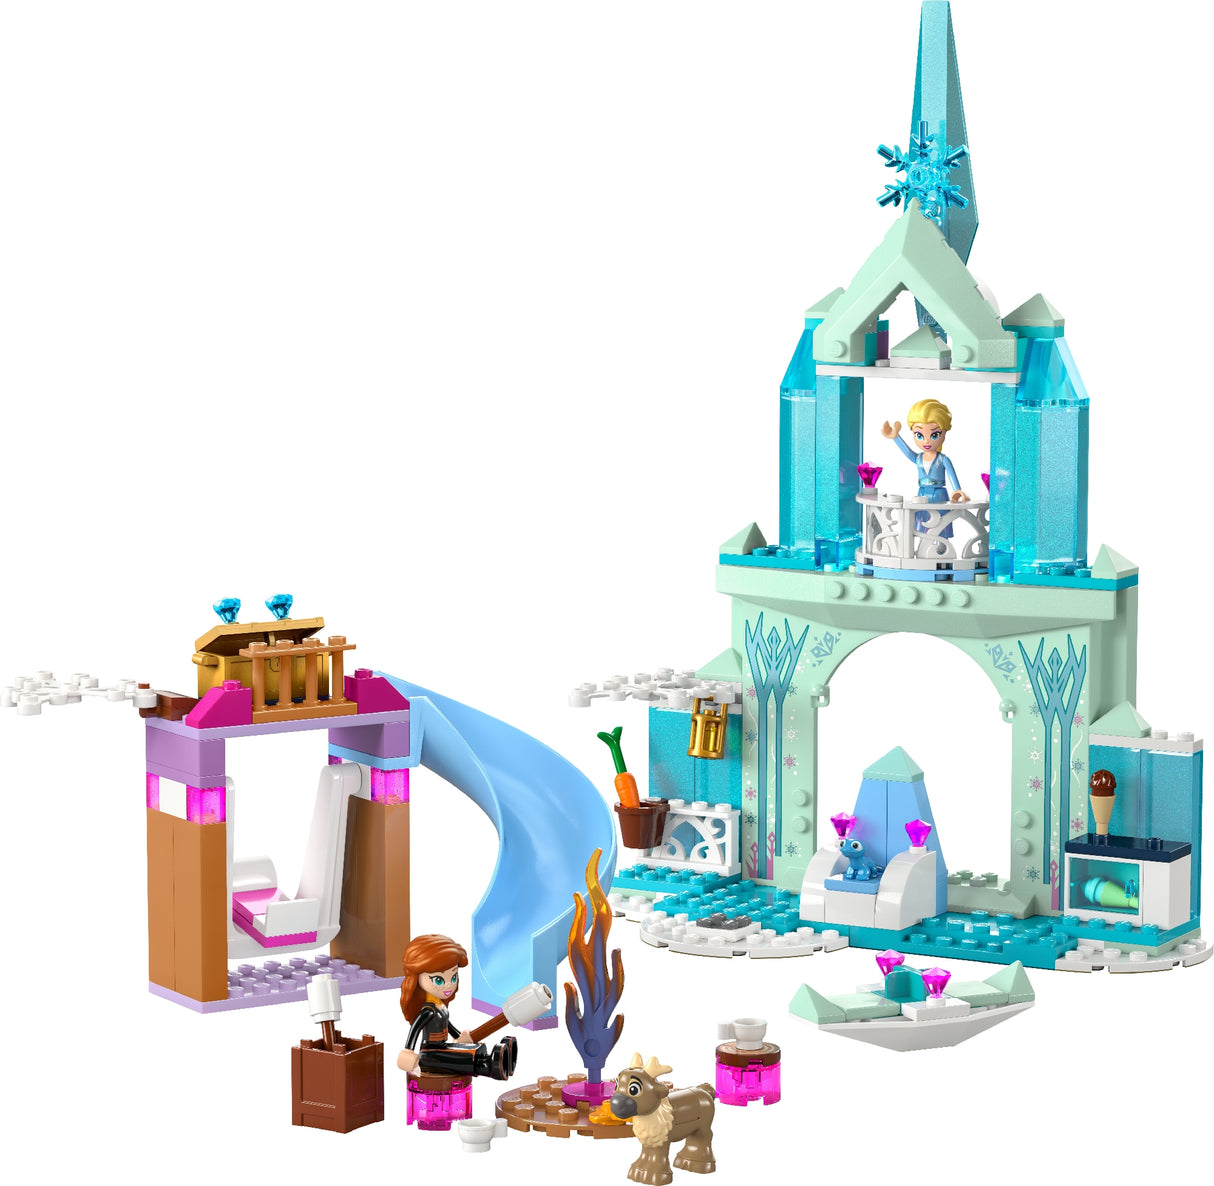 LEGO DISNEY PRINCESS ELSA'S FROZEN CASTLE 43238 AGE:4+